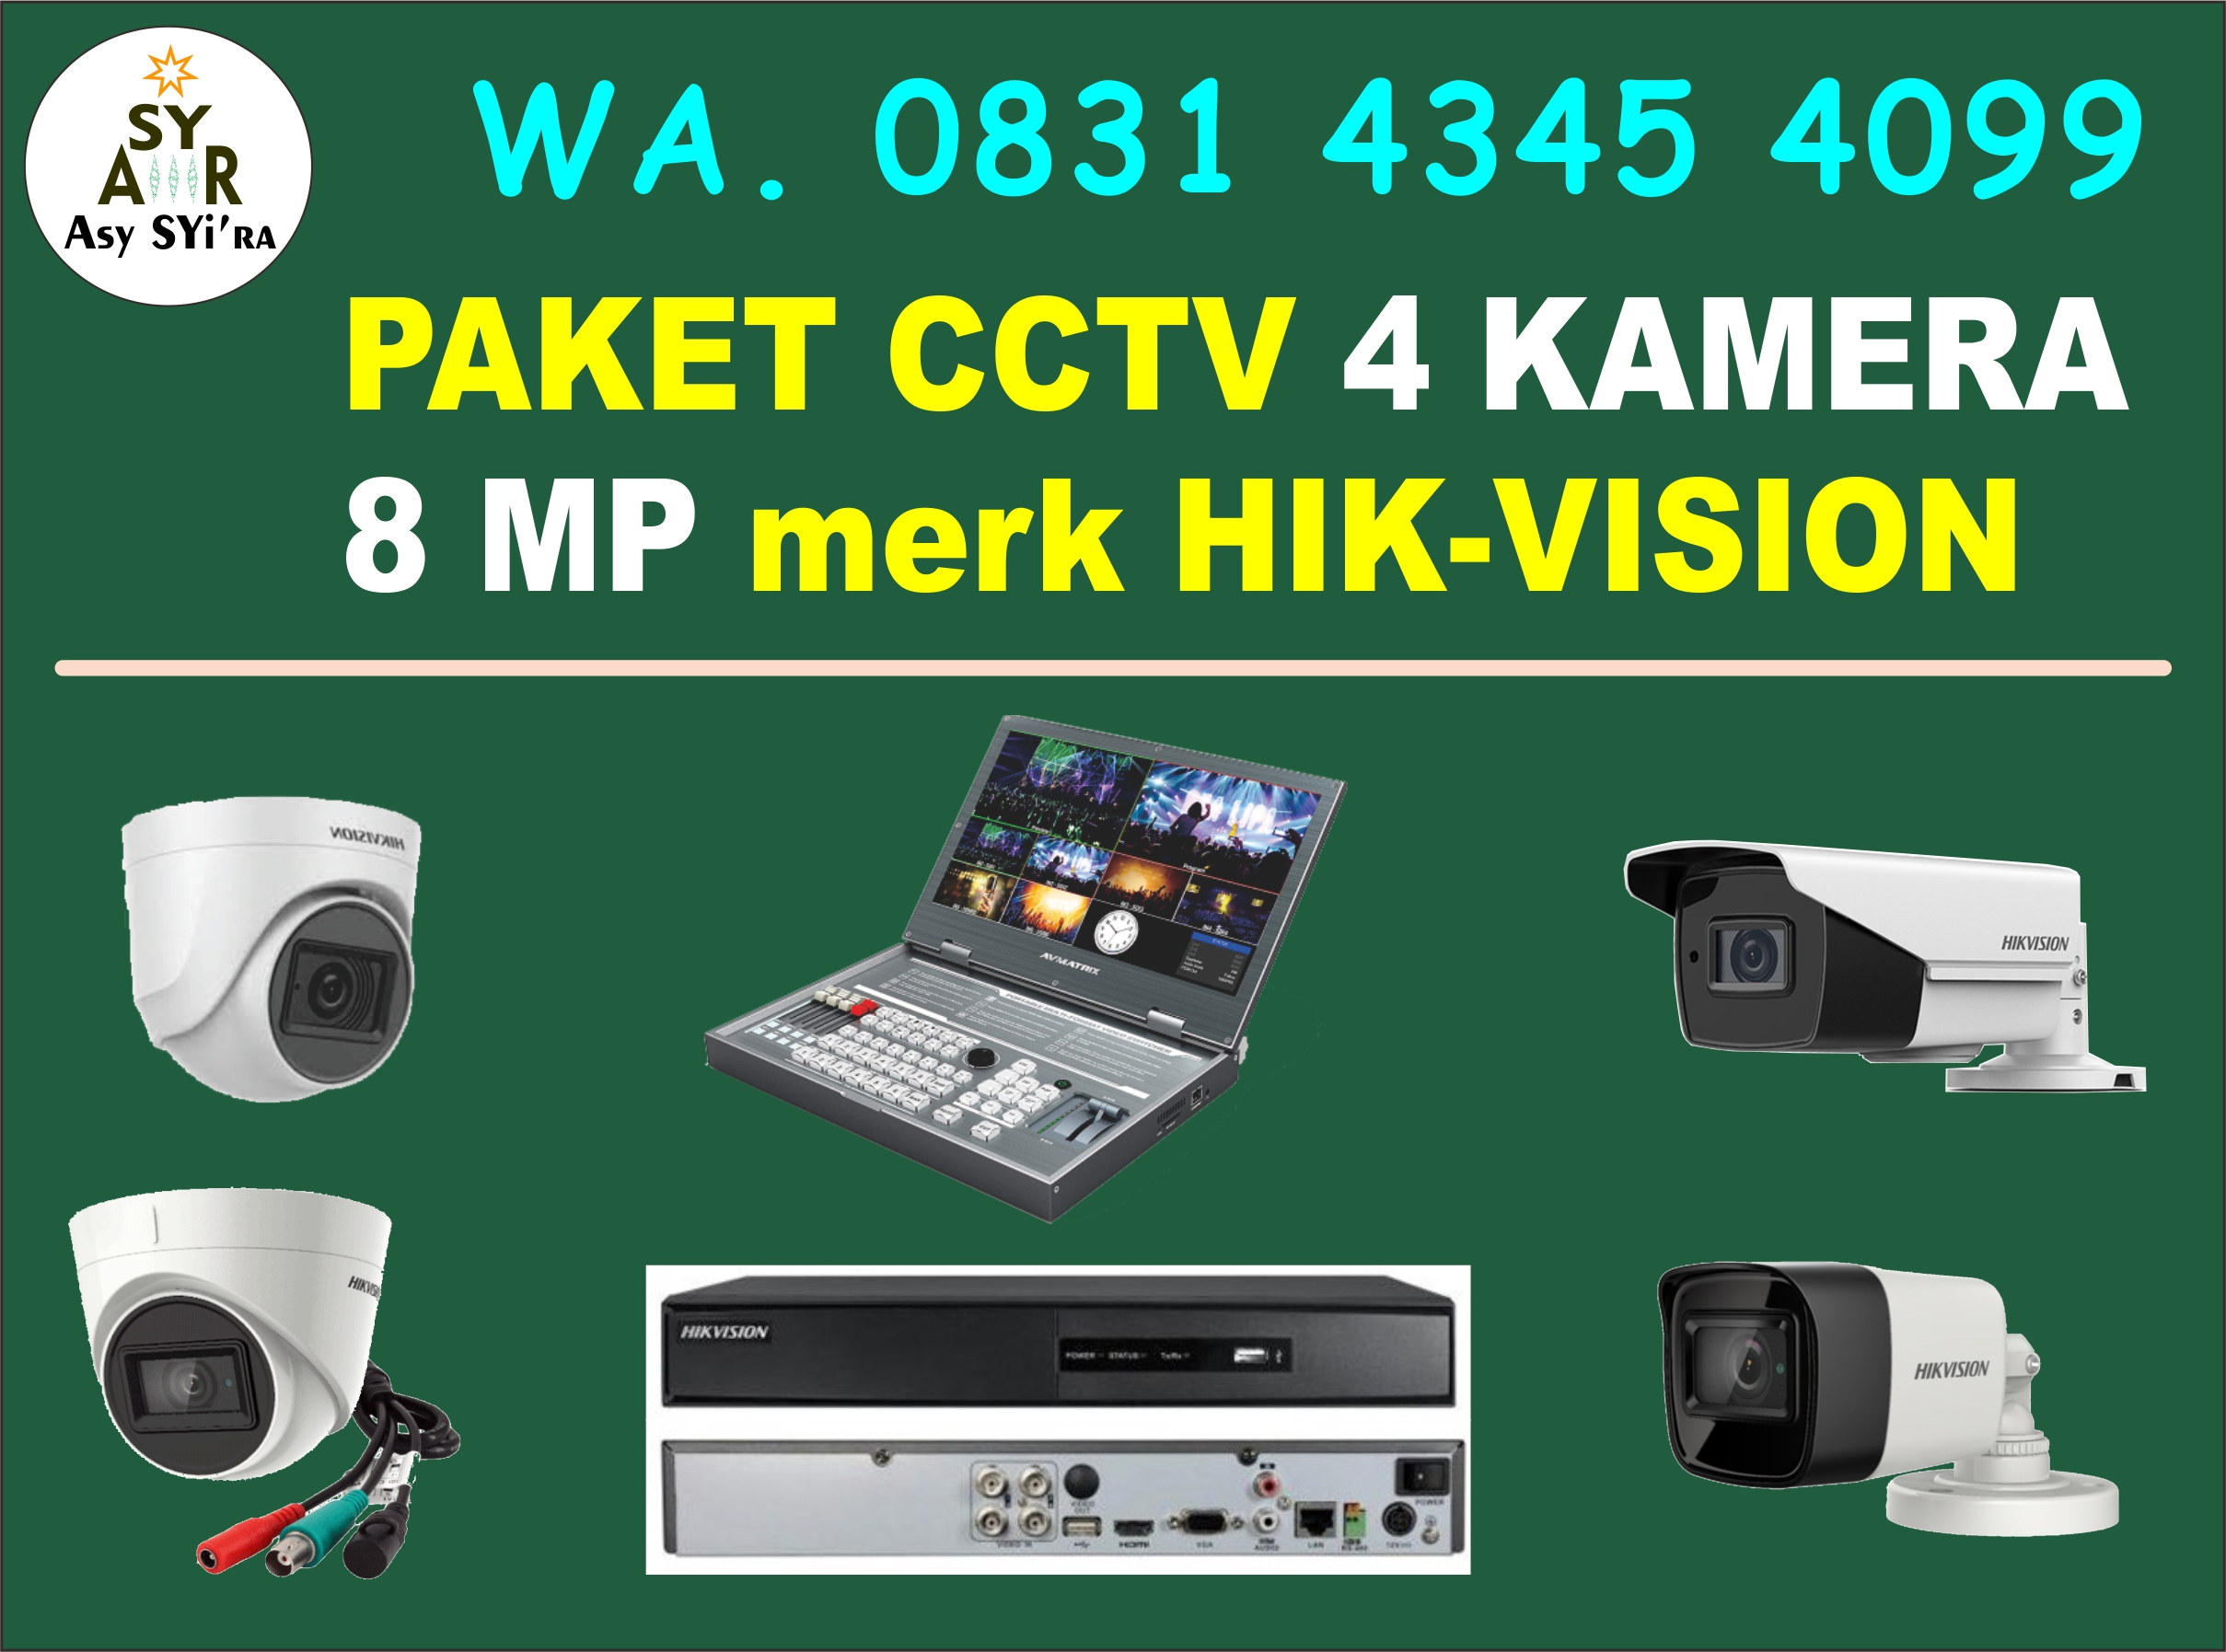 PAKET CCTV 4 KAMERA 8 MEGAPIXEL Hikvision